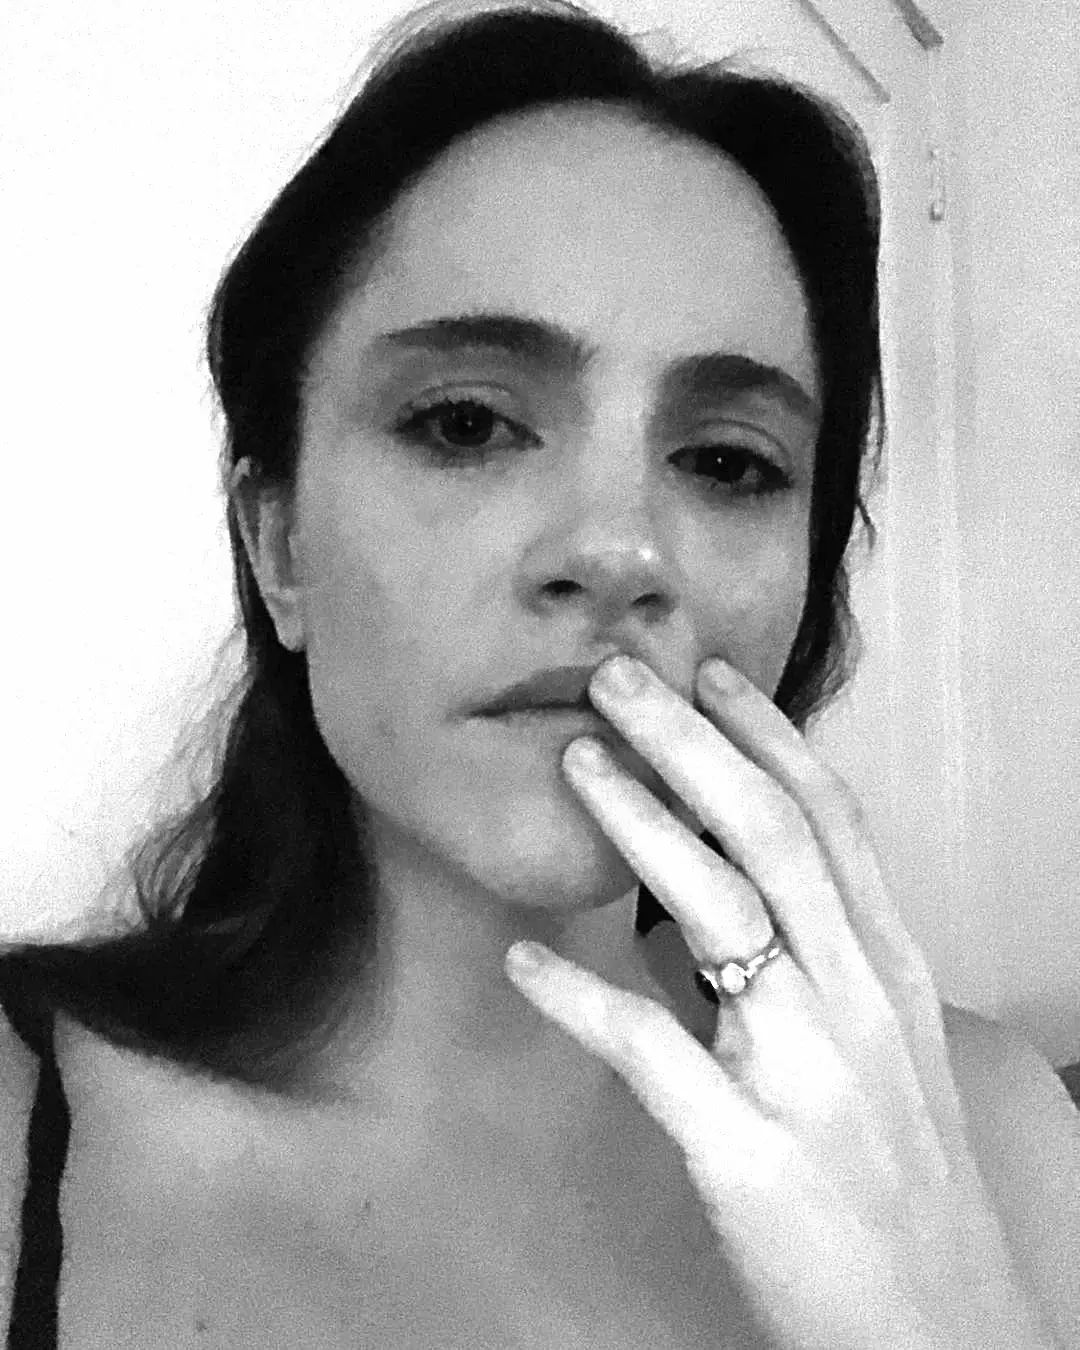 alexa nikolas crying in black and white photo